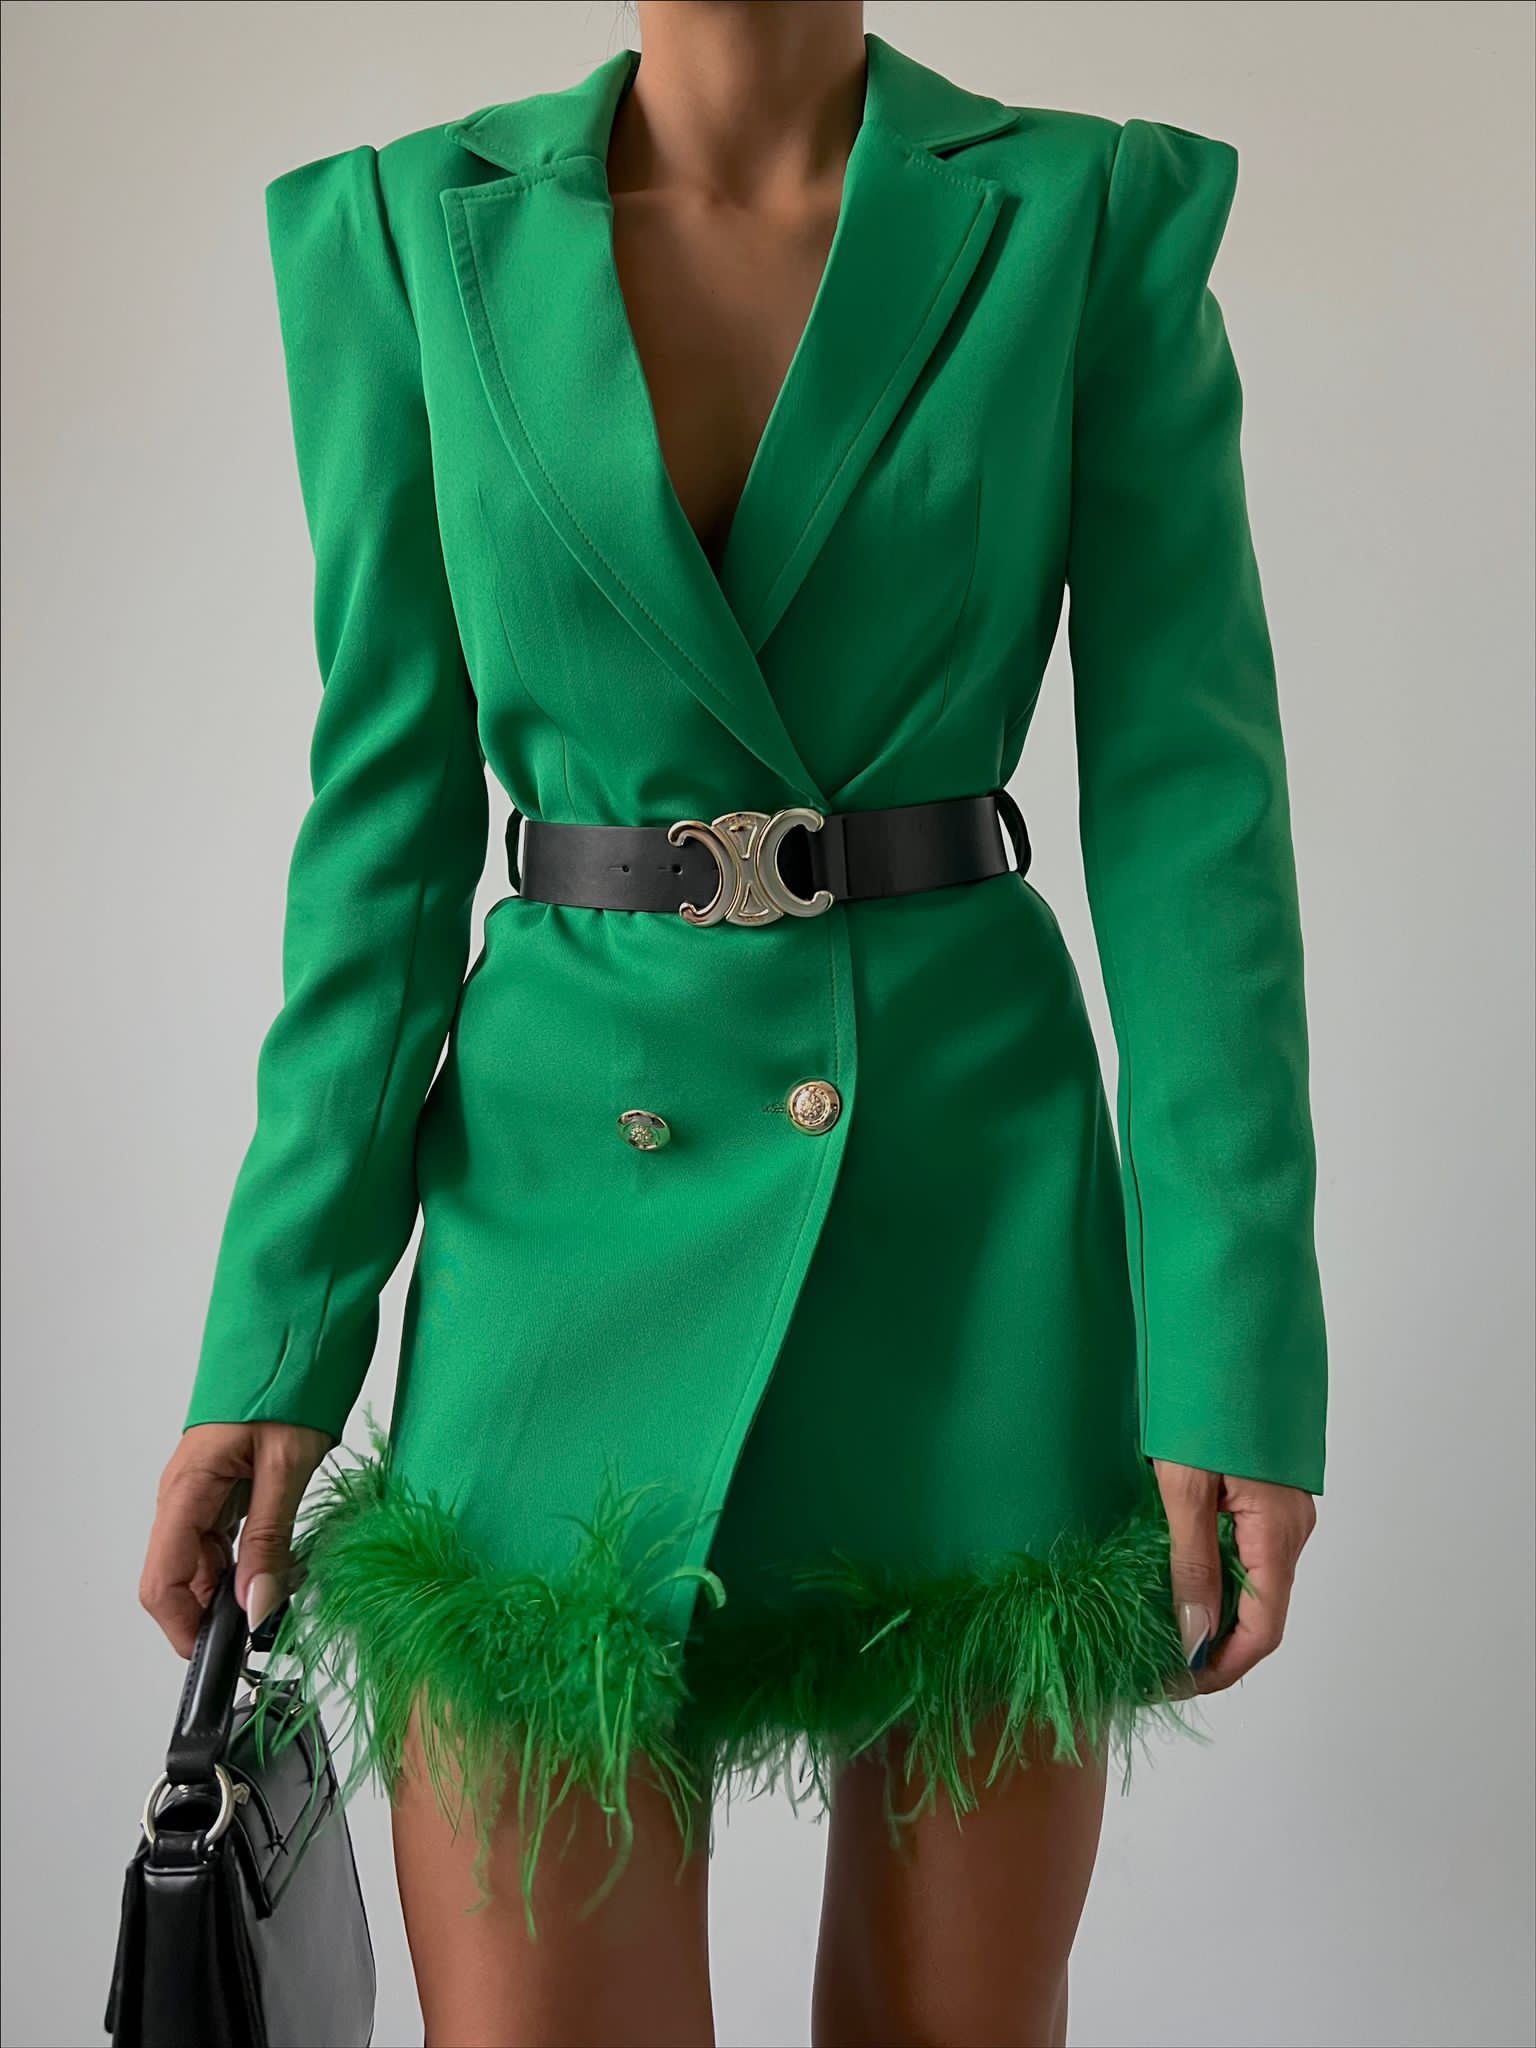 Дамски блейзър JESSICA  https://bvseductive.com/products/womans-s-coats-and-jackets-jessica-1  стилен блейзър с двуредно закопчаване кожен колан подчертаващ талията красиво предложение, с което ще направите впечатление моделът може да се носи и като рокля от по-ниски дами един размер умален